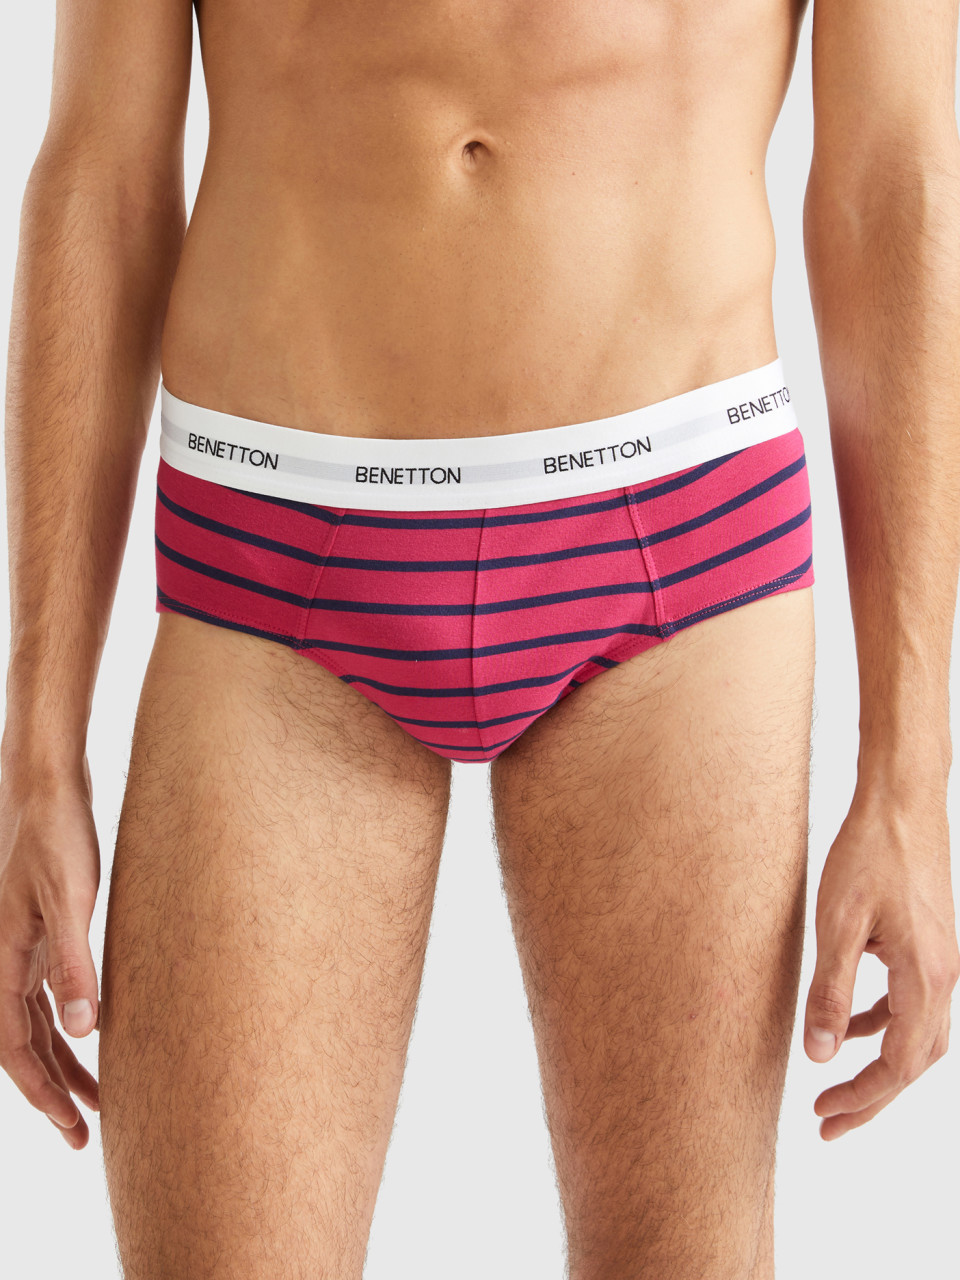 Benetton, Striped Underwear In Stretch Organic Cotton, Multi-color, Men